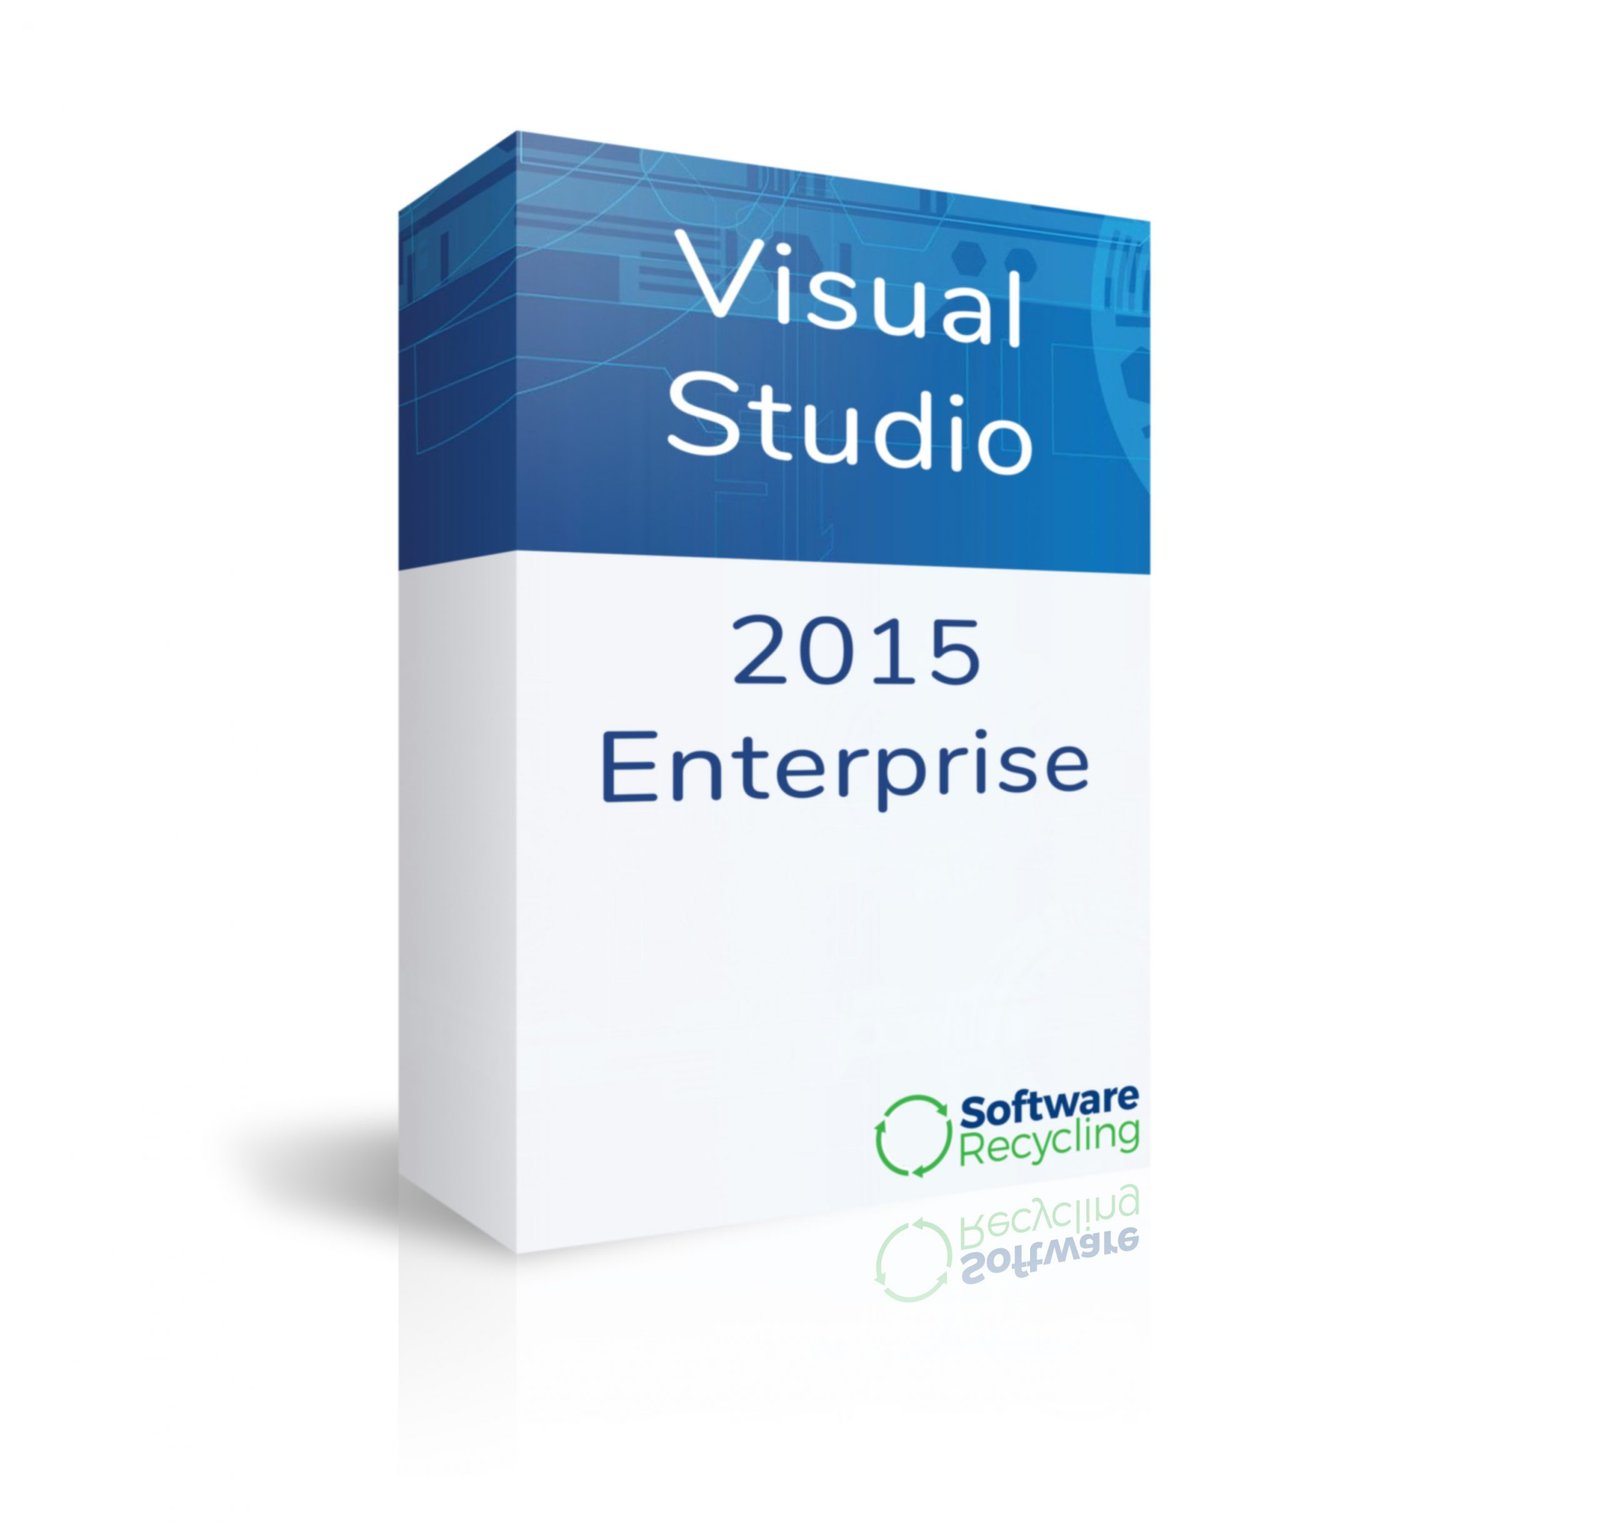 download visual studio enterprise 2015 full version